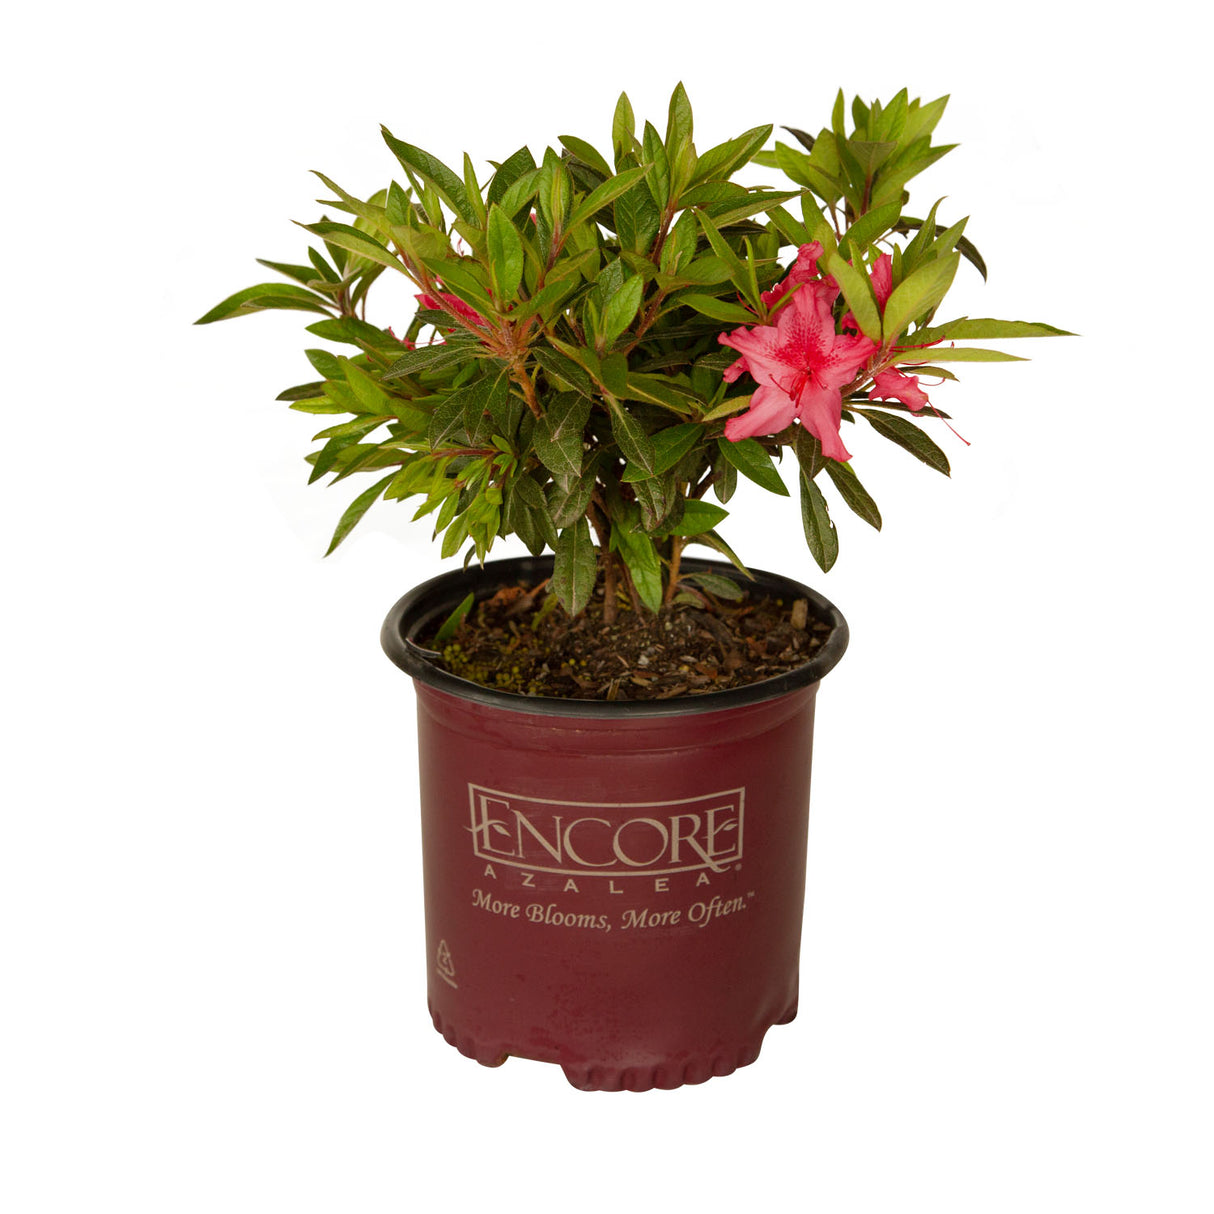 encore azaleas for sale online pink flower blooms 